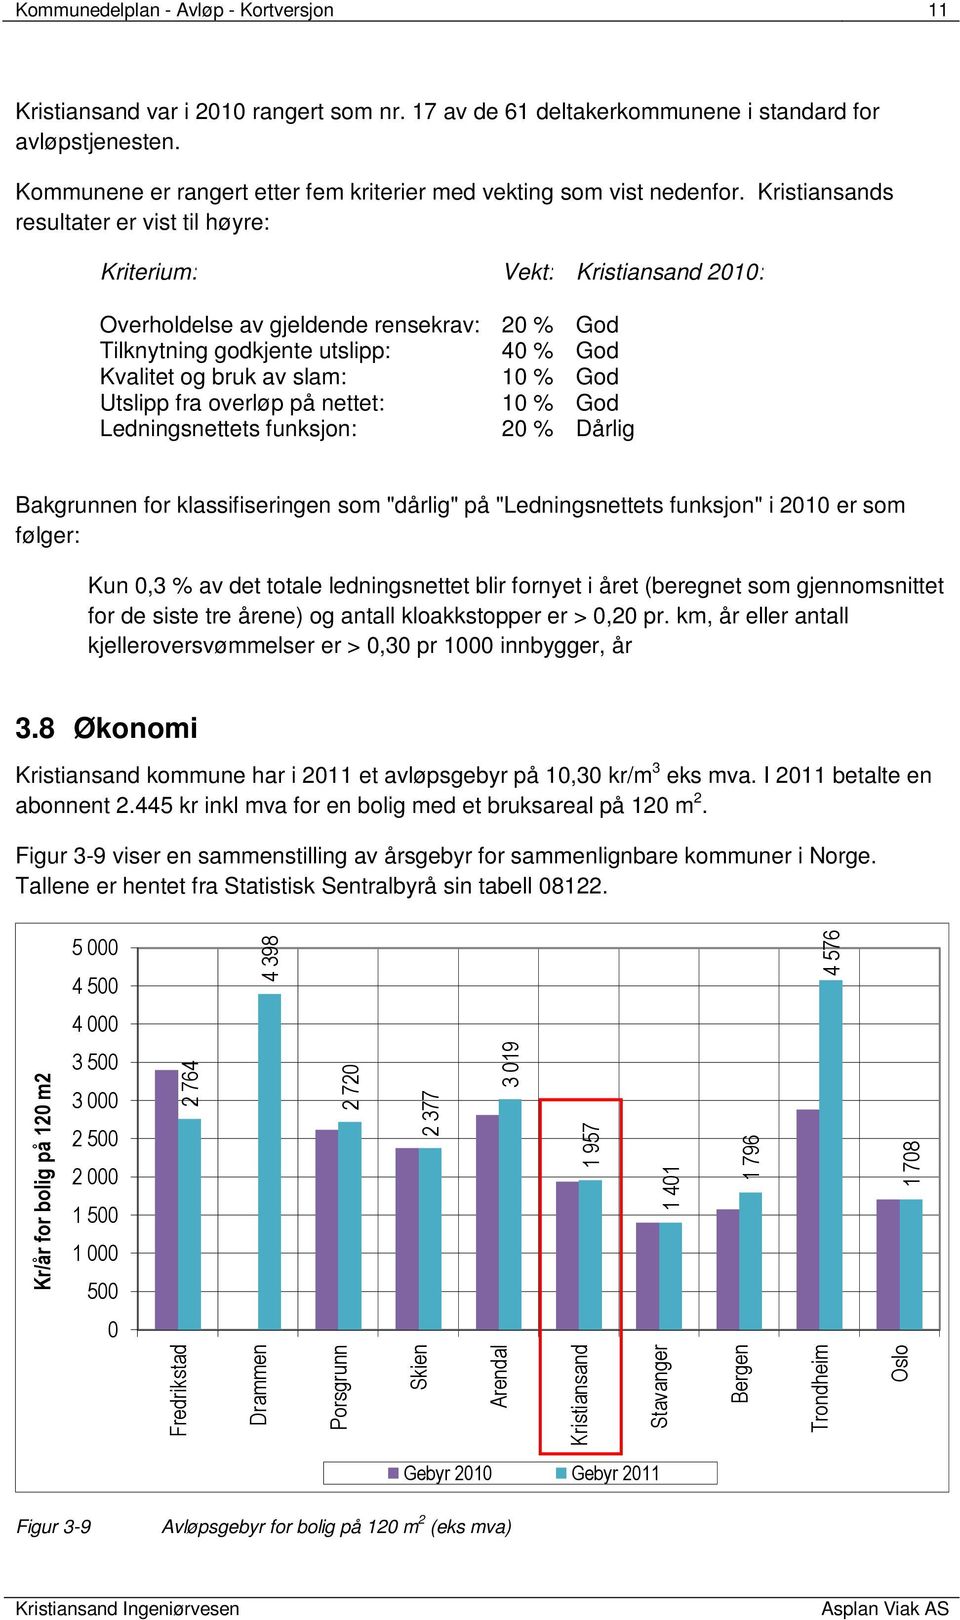 Kristiansands resultater er vist til høyre: Kriterium: Vekt: Kristiansand 2010: Overholdelse av gjeldende rensekrav: 20 % God Tilknytning godkjente utslipp: 40 % God Kvalitet og bruk av slam: 10 %